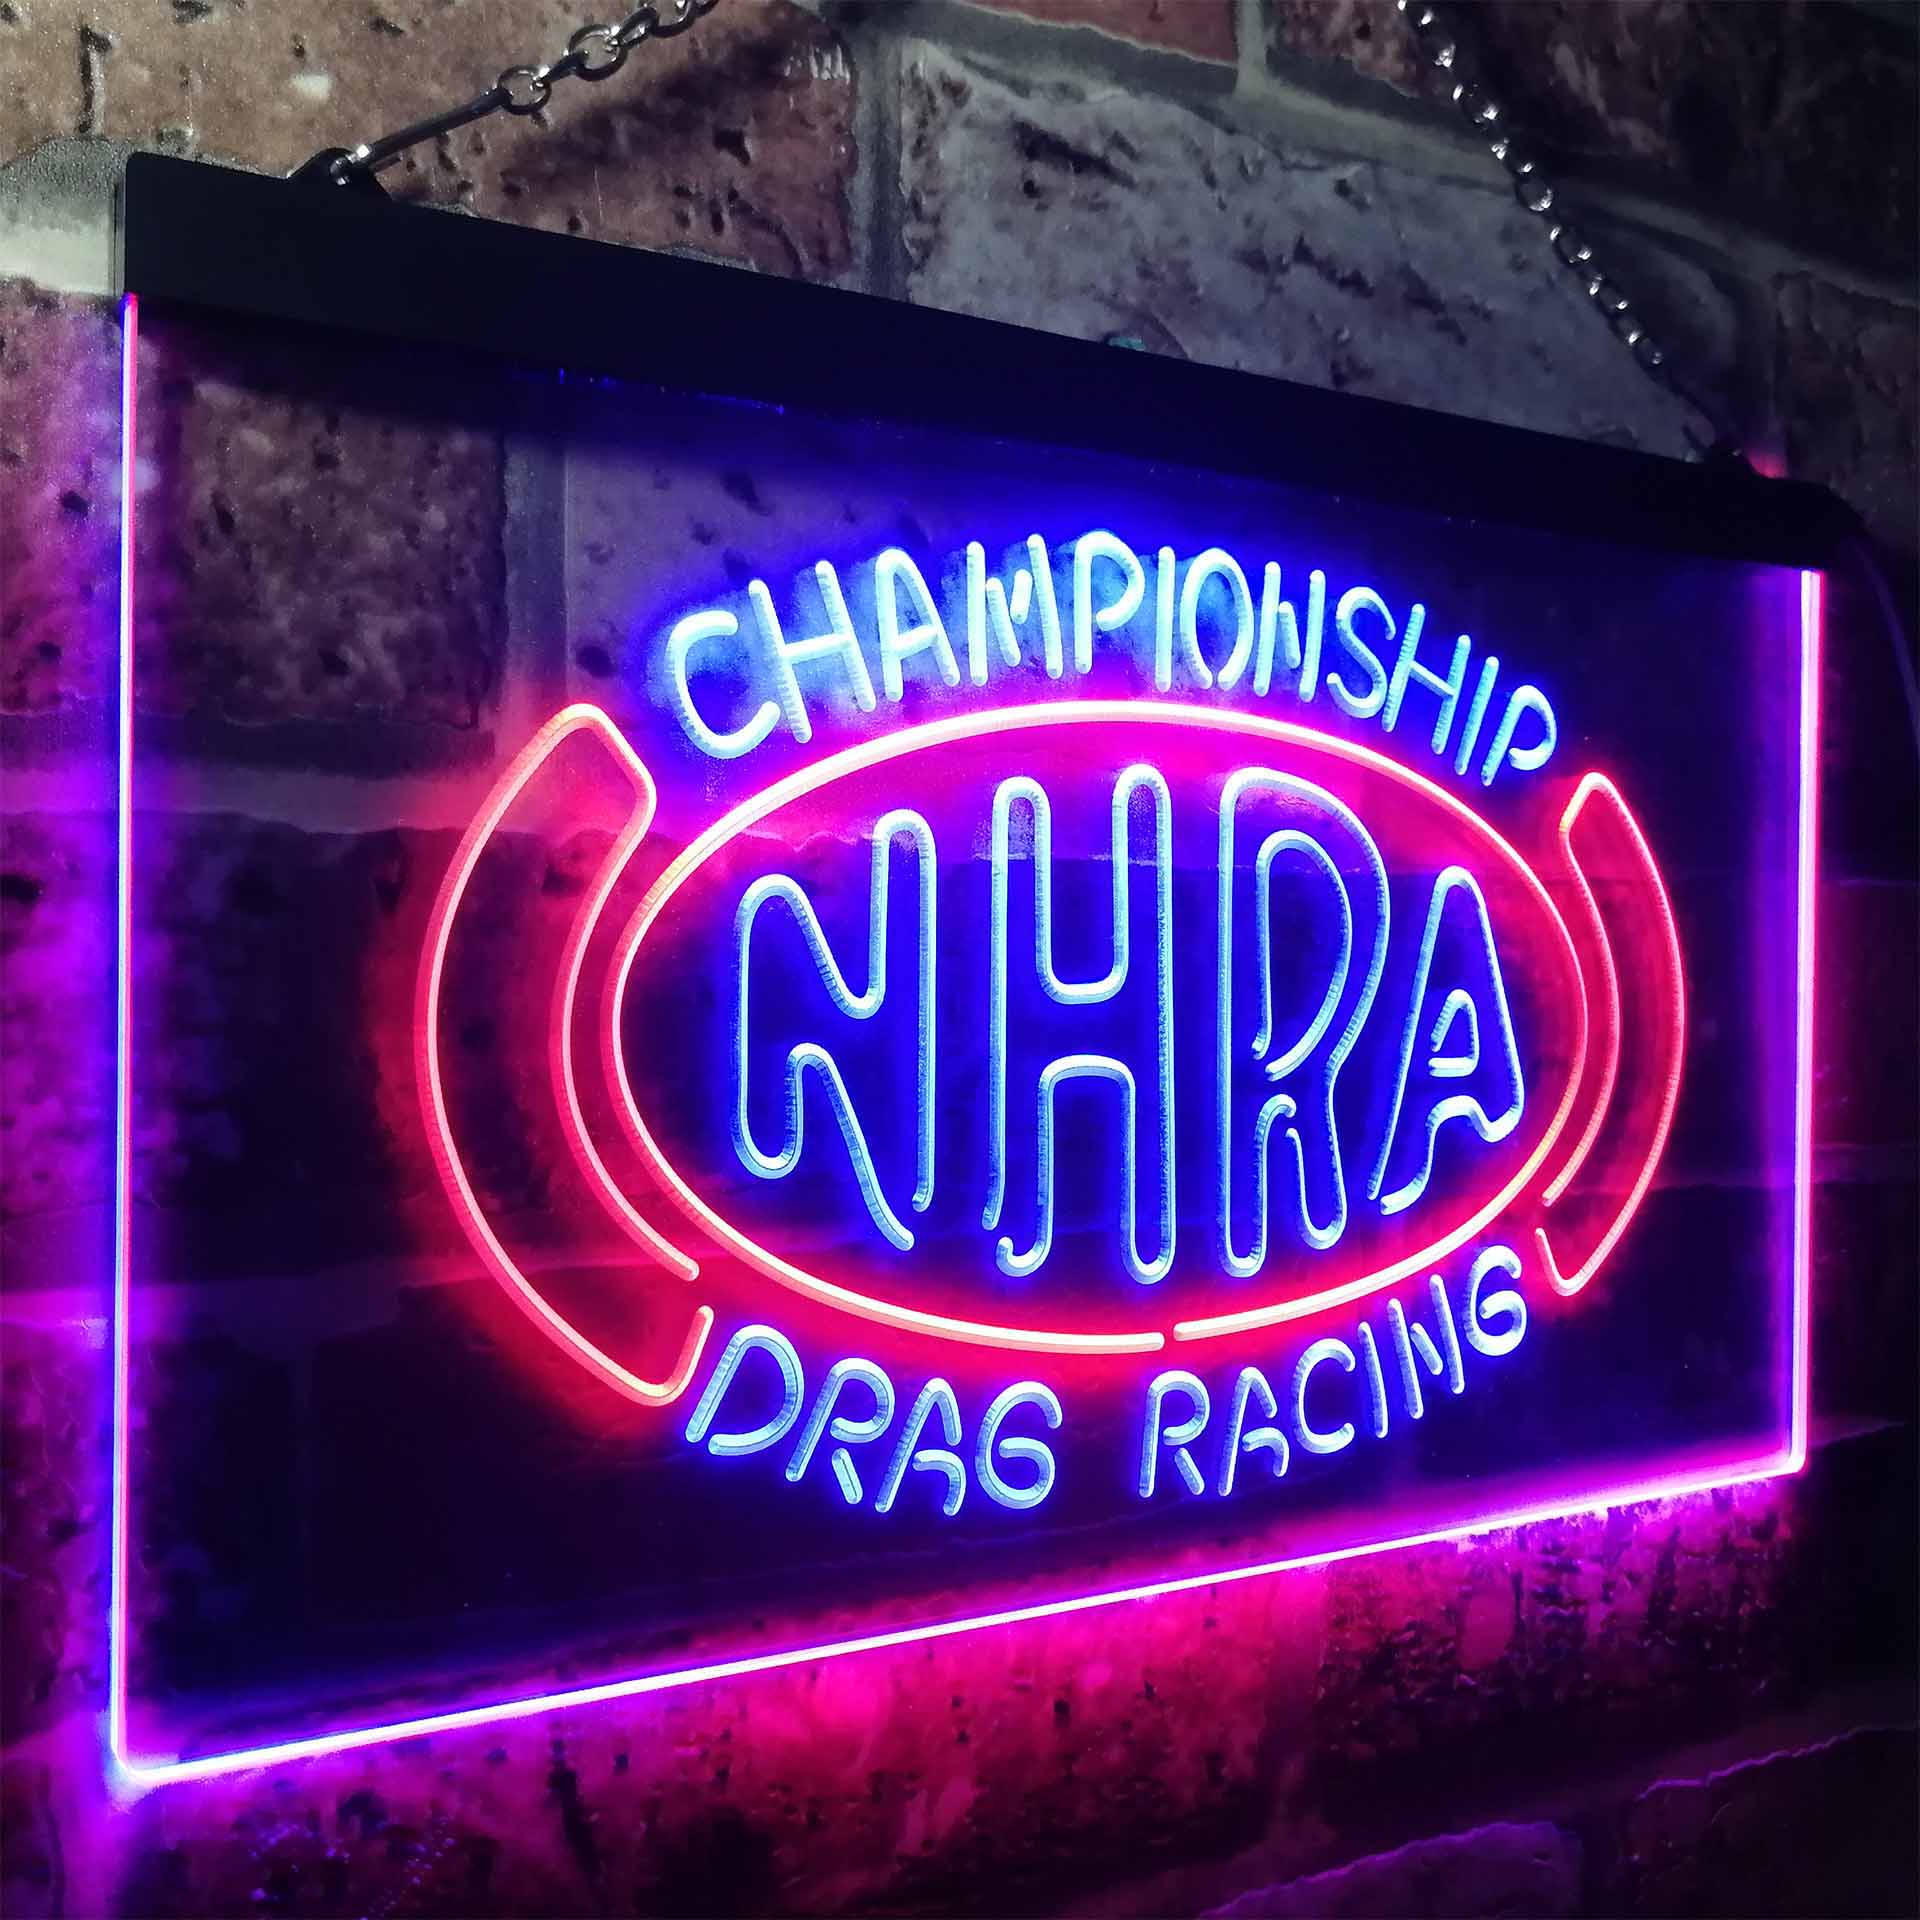 NHRA Drag Racing LED Neon Sign LED Neon Sign